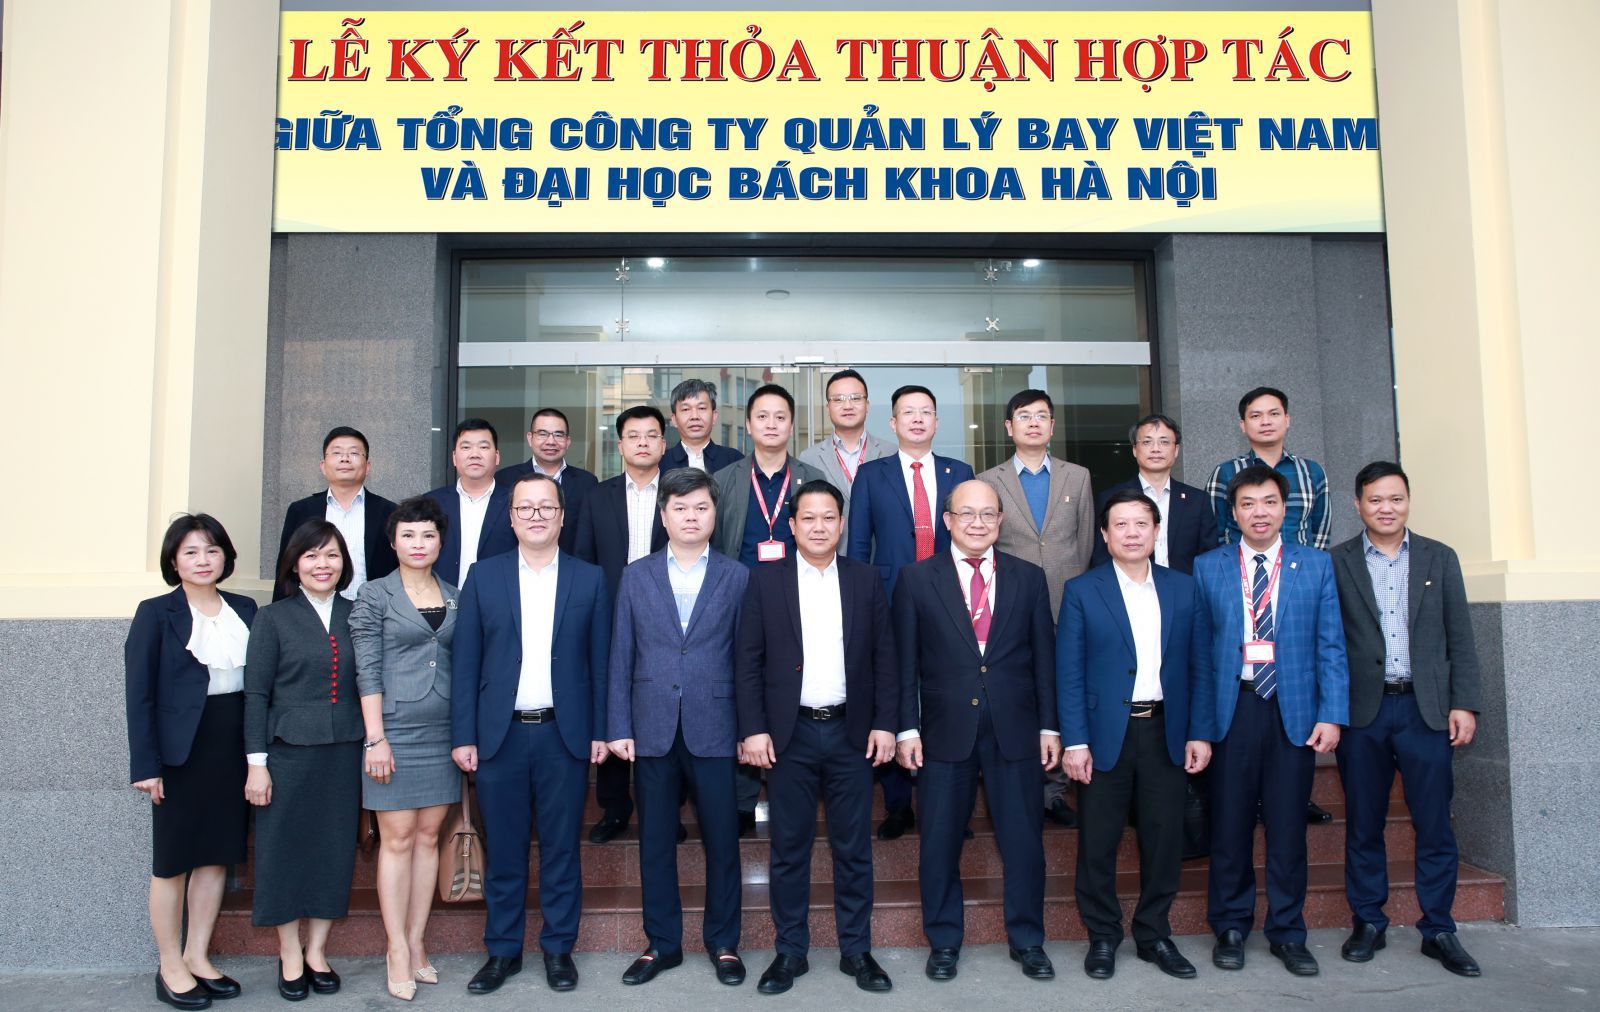 VATM và Đại học Bách khoa Hà Nội ký kết thỏa thuận hợp tác